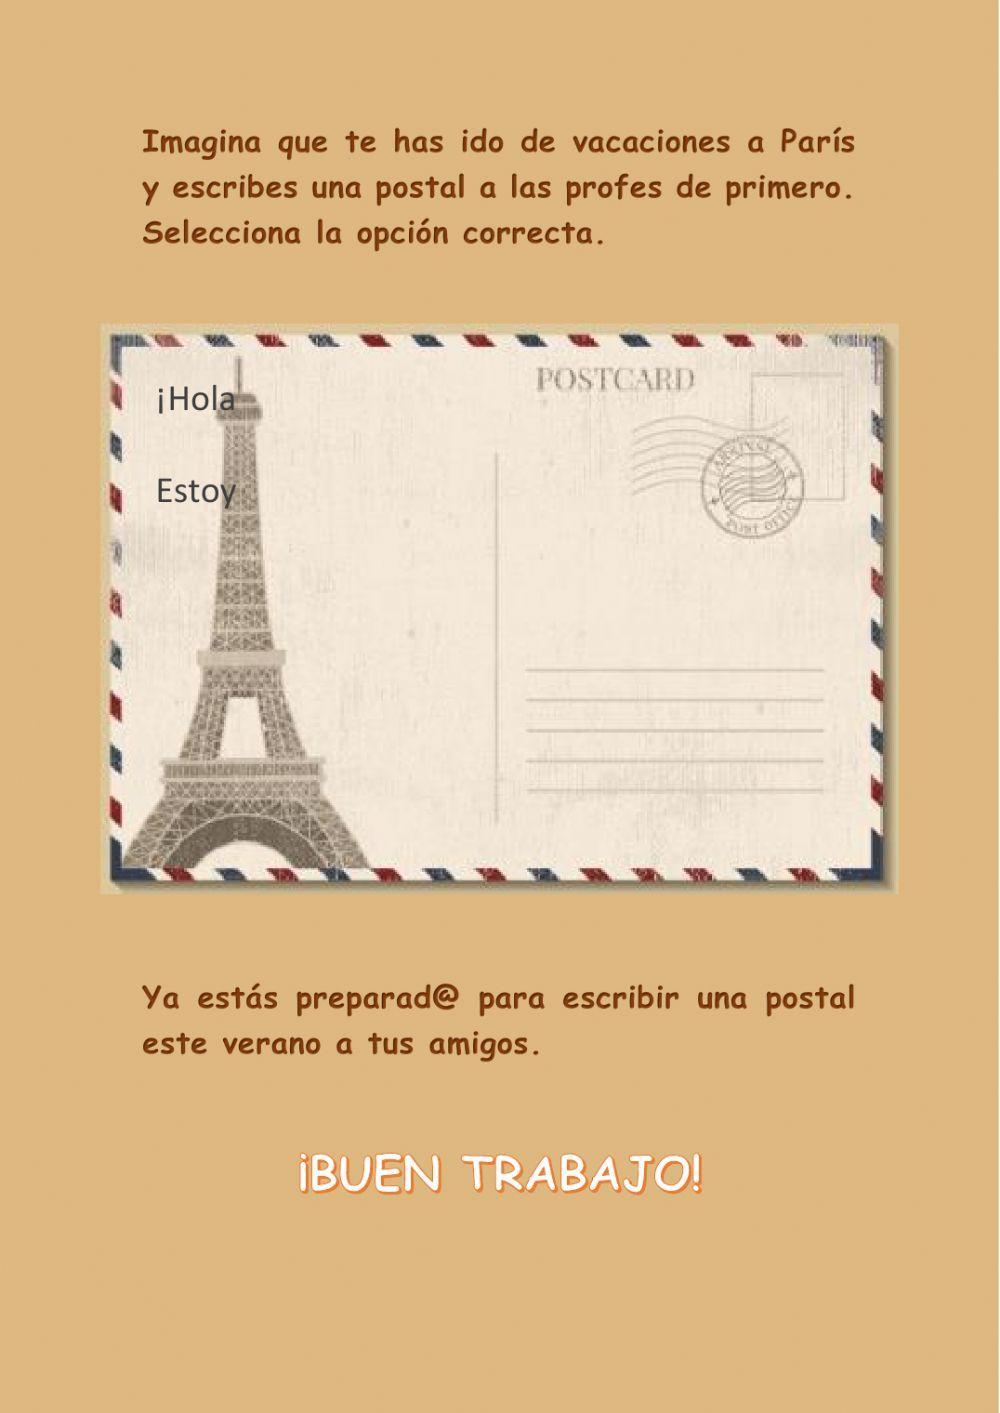 La postal